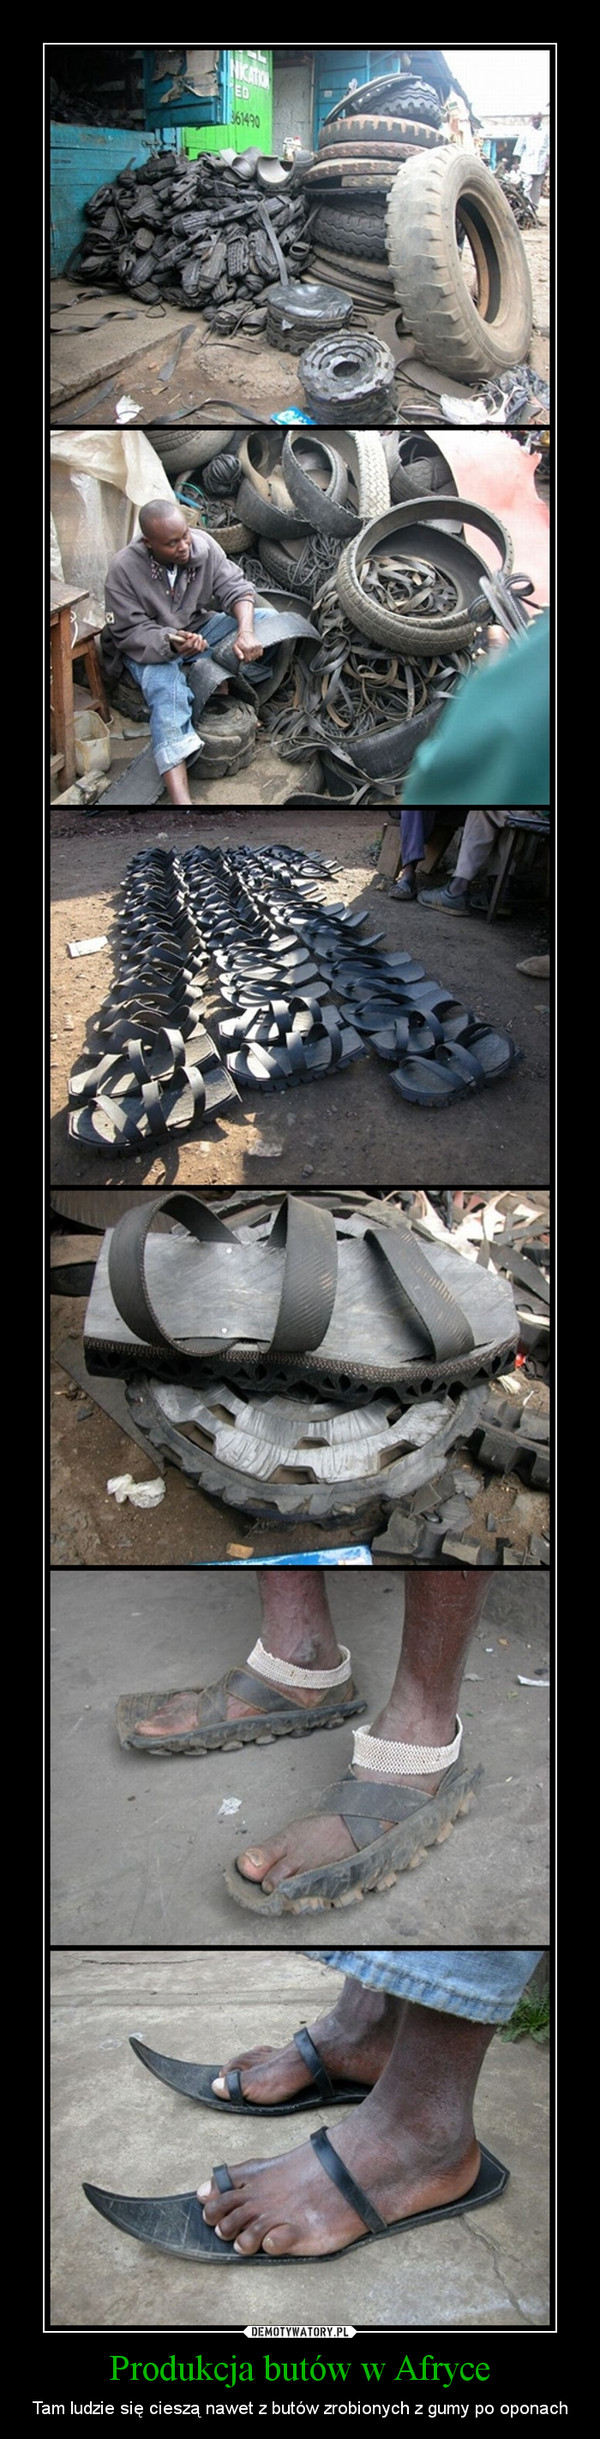 Produkcja butów w Afryce – Tam ludzie się cieszą nawet z butów zrobionych z gumy po oponach 